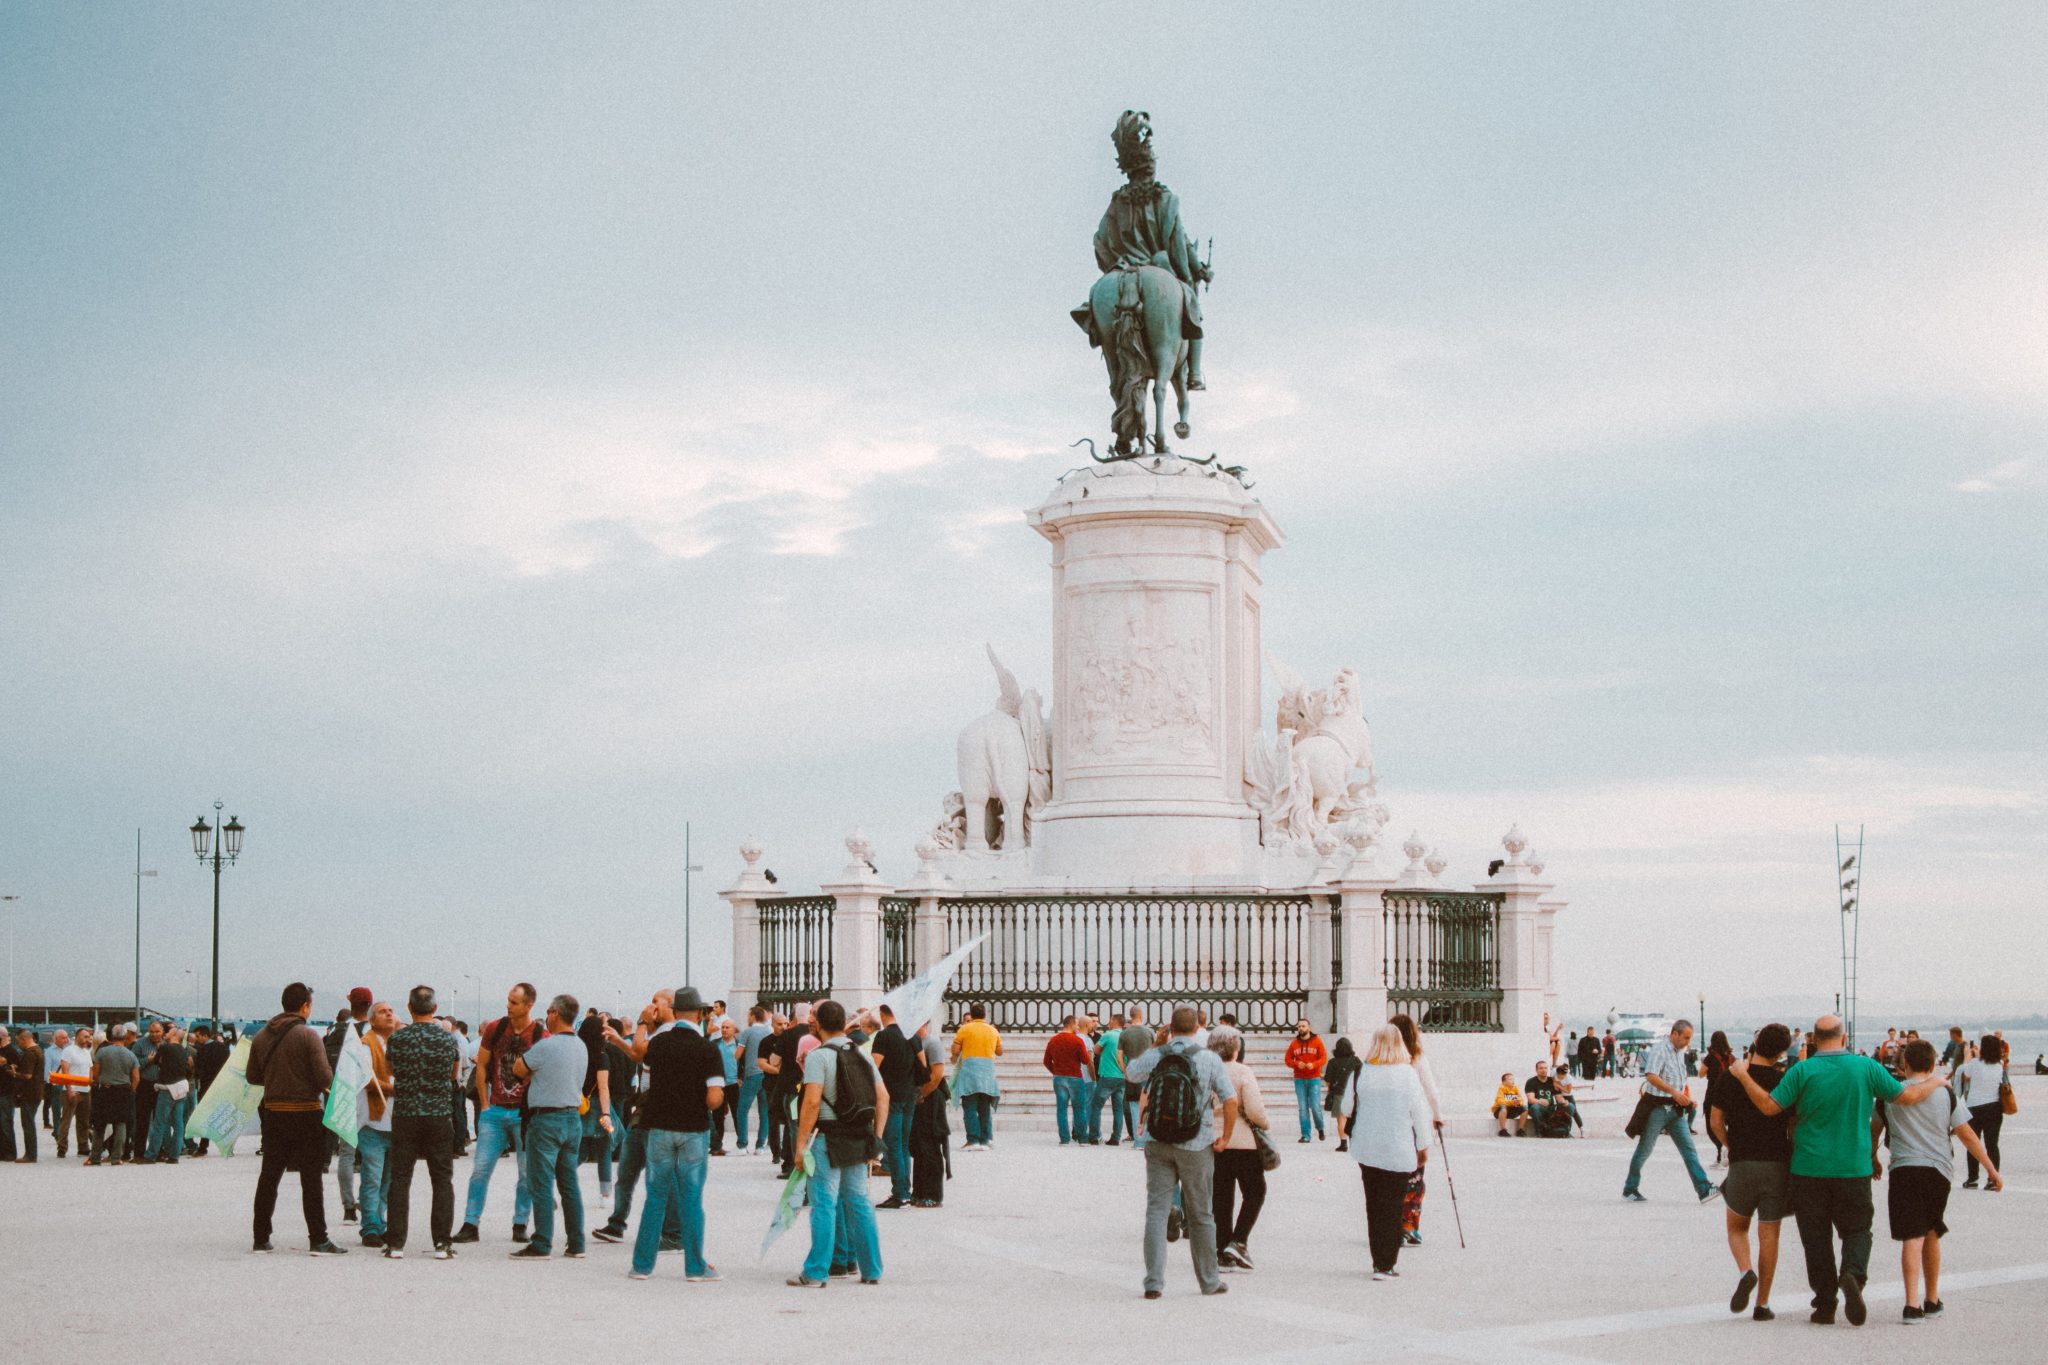 Duży plac handlowy na którym mieści się pomnik Józefa I na koniu. Wokół pomnika duża grupa zwiedzających Lizbonę turystów.